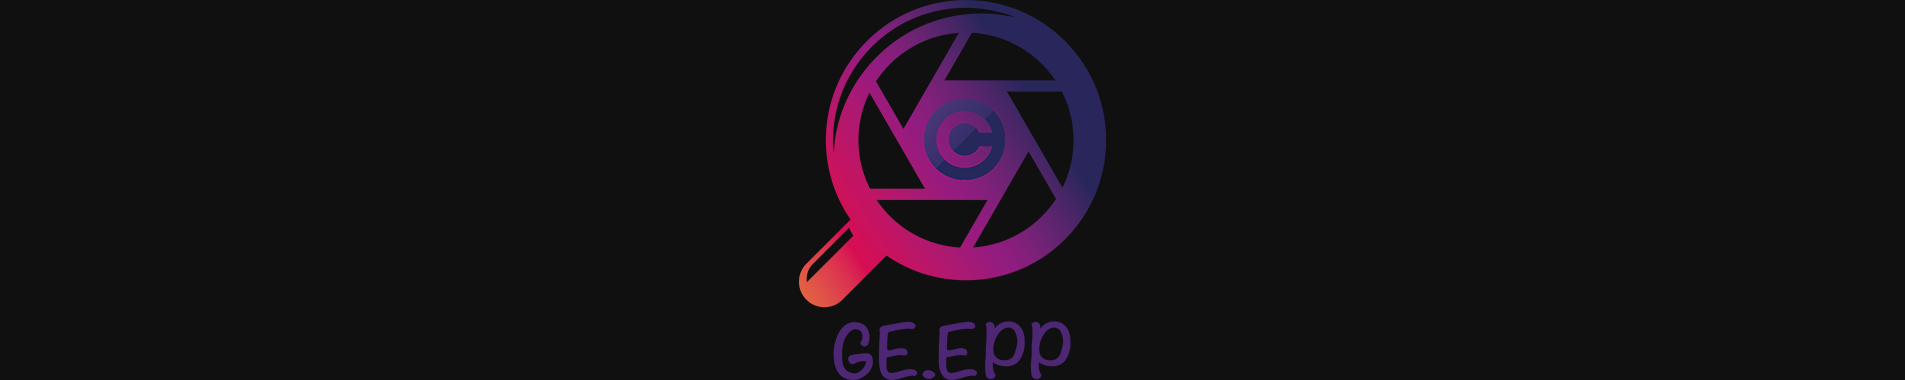 Logos : GE.EPP